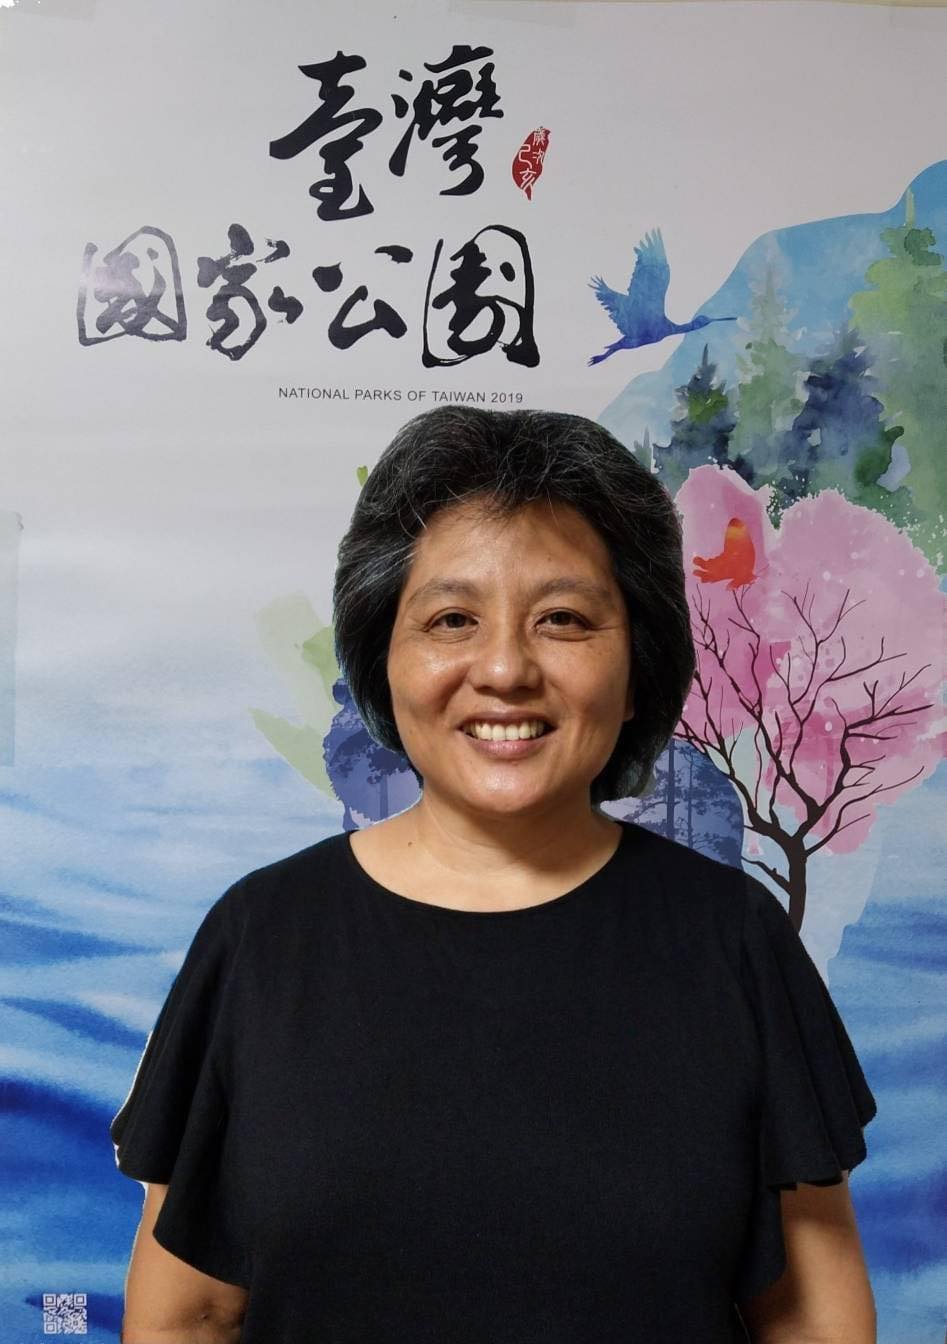 Mục sư Trần Thục Trinh phục vụ trong Nhà thờ Mãn Châu của Giáo hội Cơ đốc giáo Đài Loan. Bà có nhiều kinh nghiệm cũng như những điều đáng nhớ đối với những công việc liên quan đến di dân mới. (Nguồn ảnh: Báo Bốn Phương)